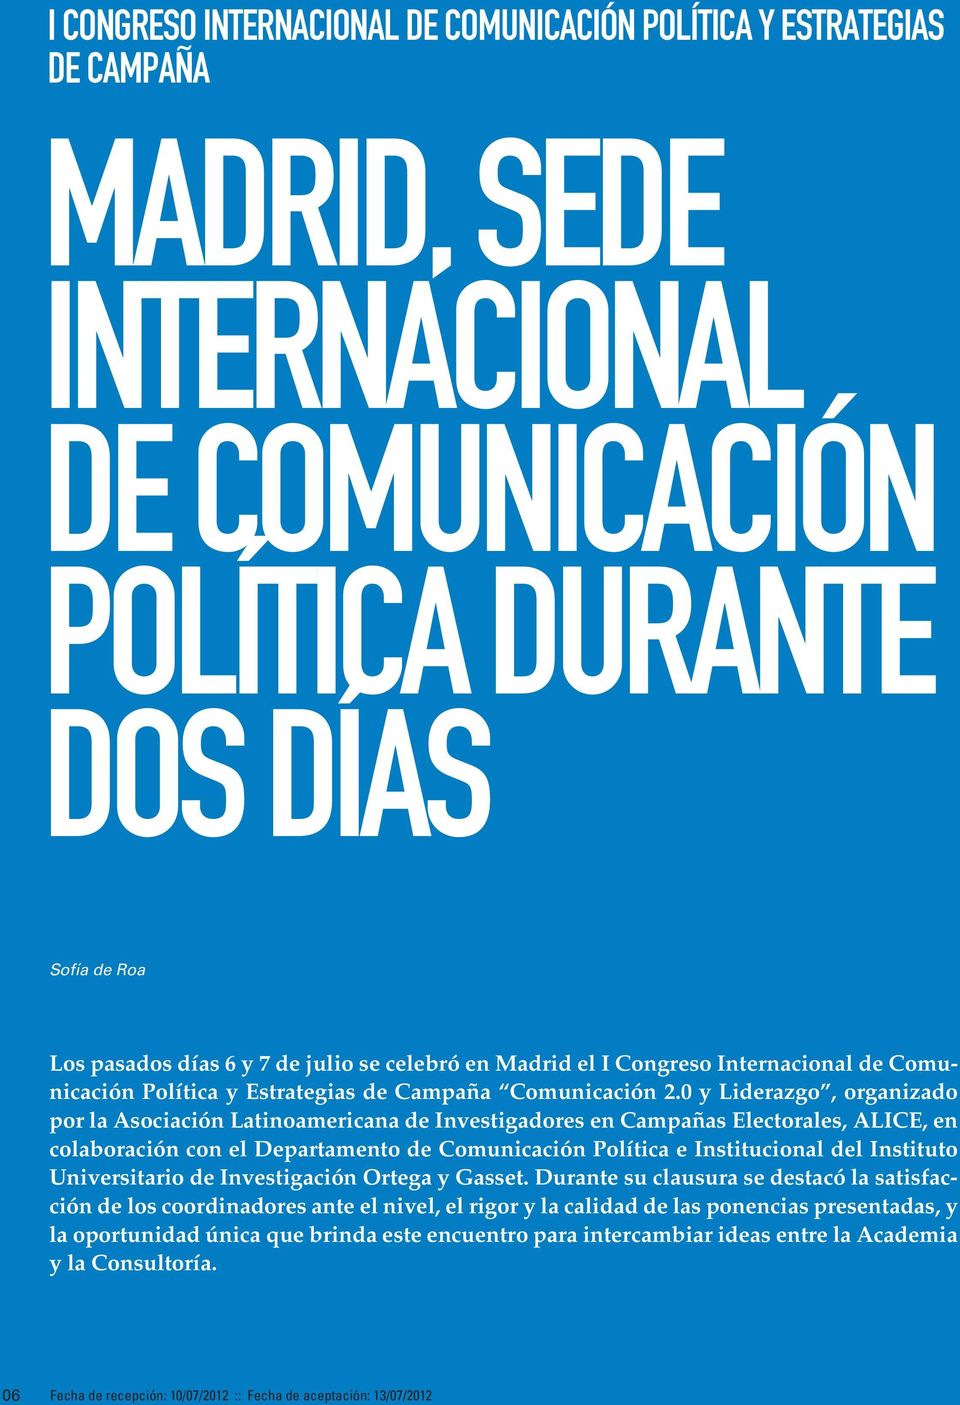 0 y Liderazgo, organizado por la Asociación Latinoamericana de Investigadores en Campañas Electorales, ALICE, en colaboración con el Departamento de Comunicación Política e Institucional del